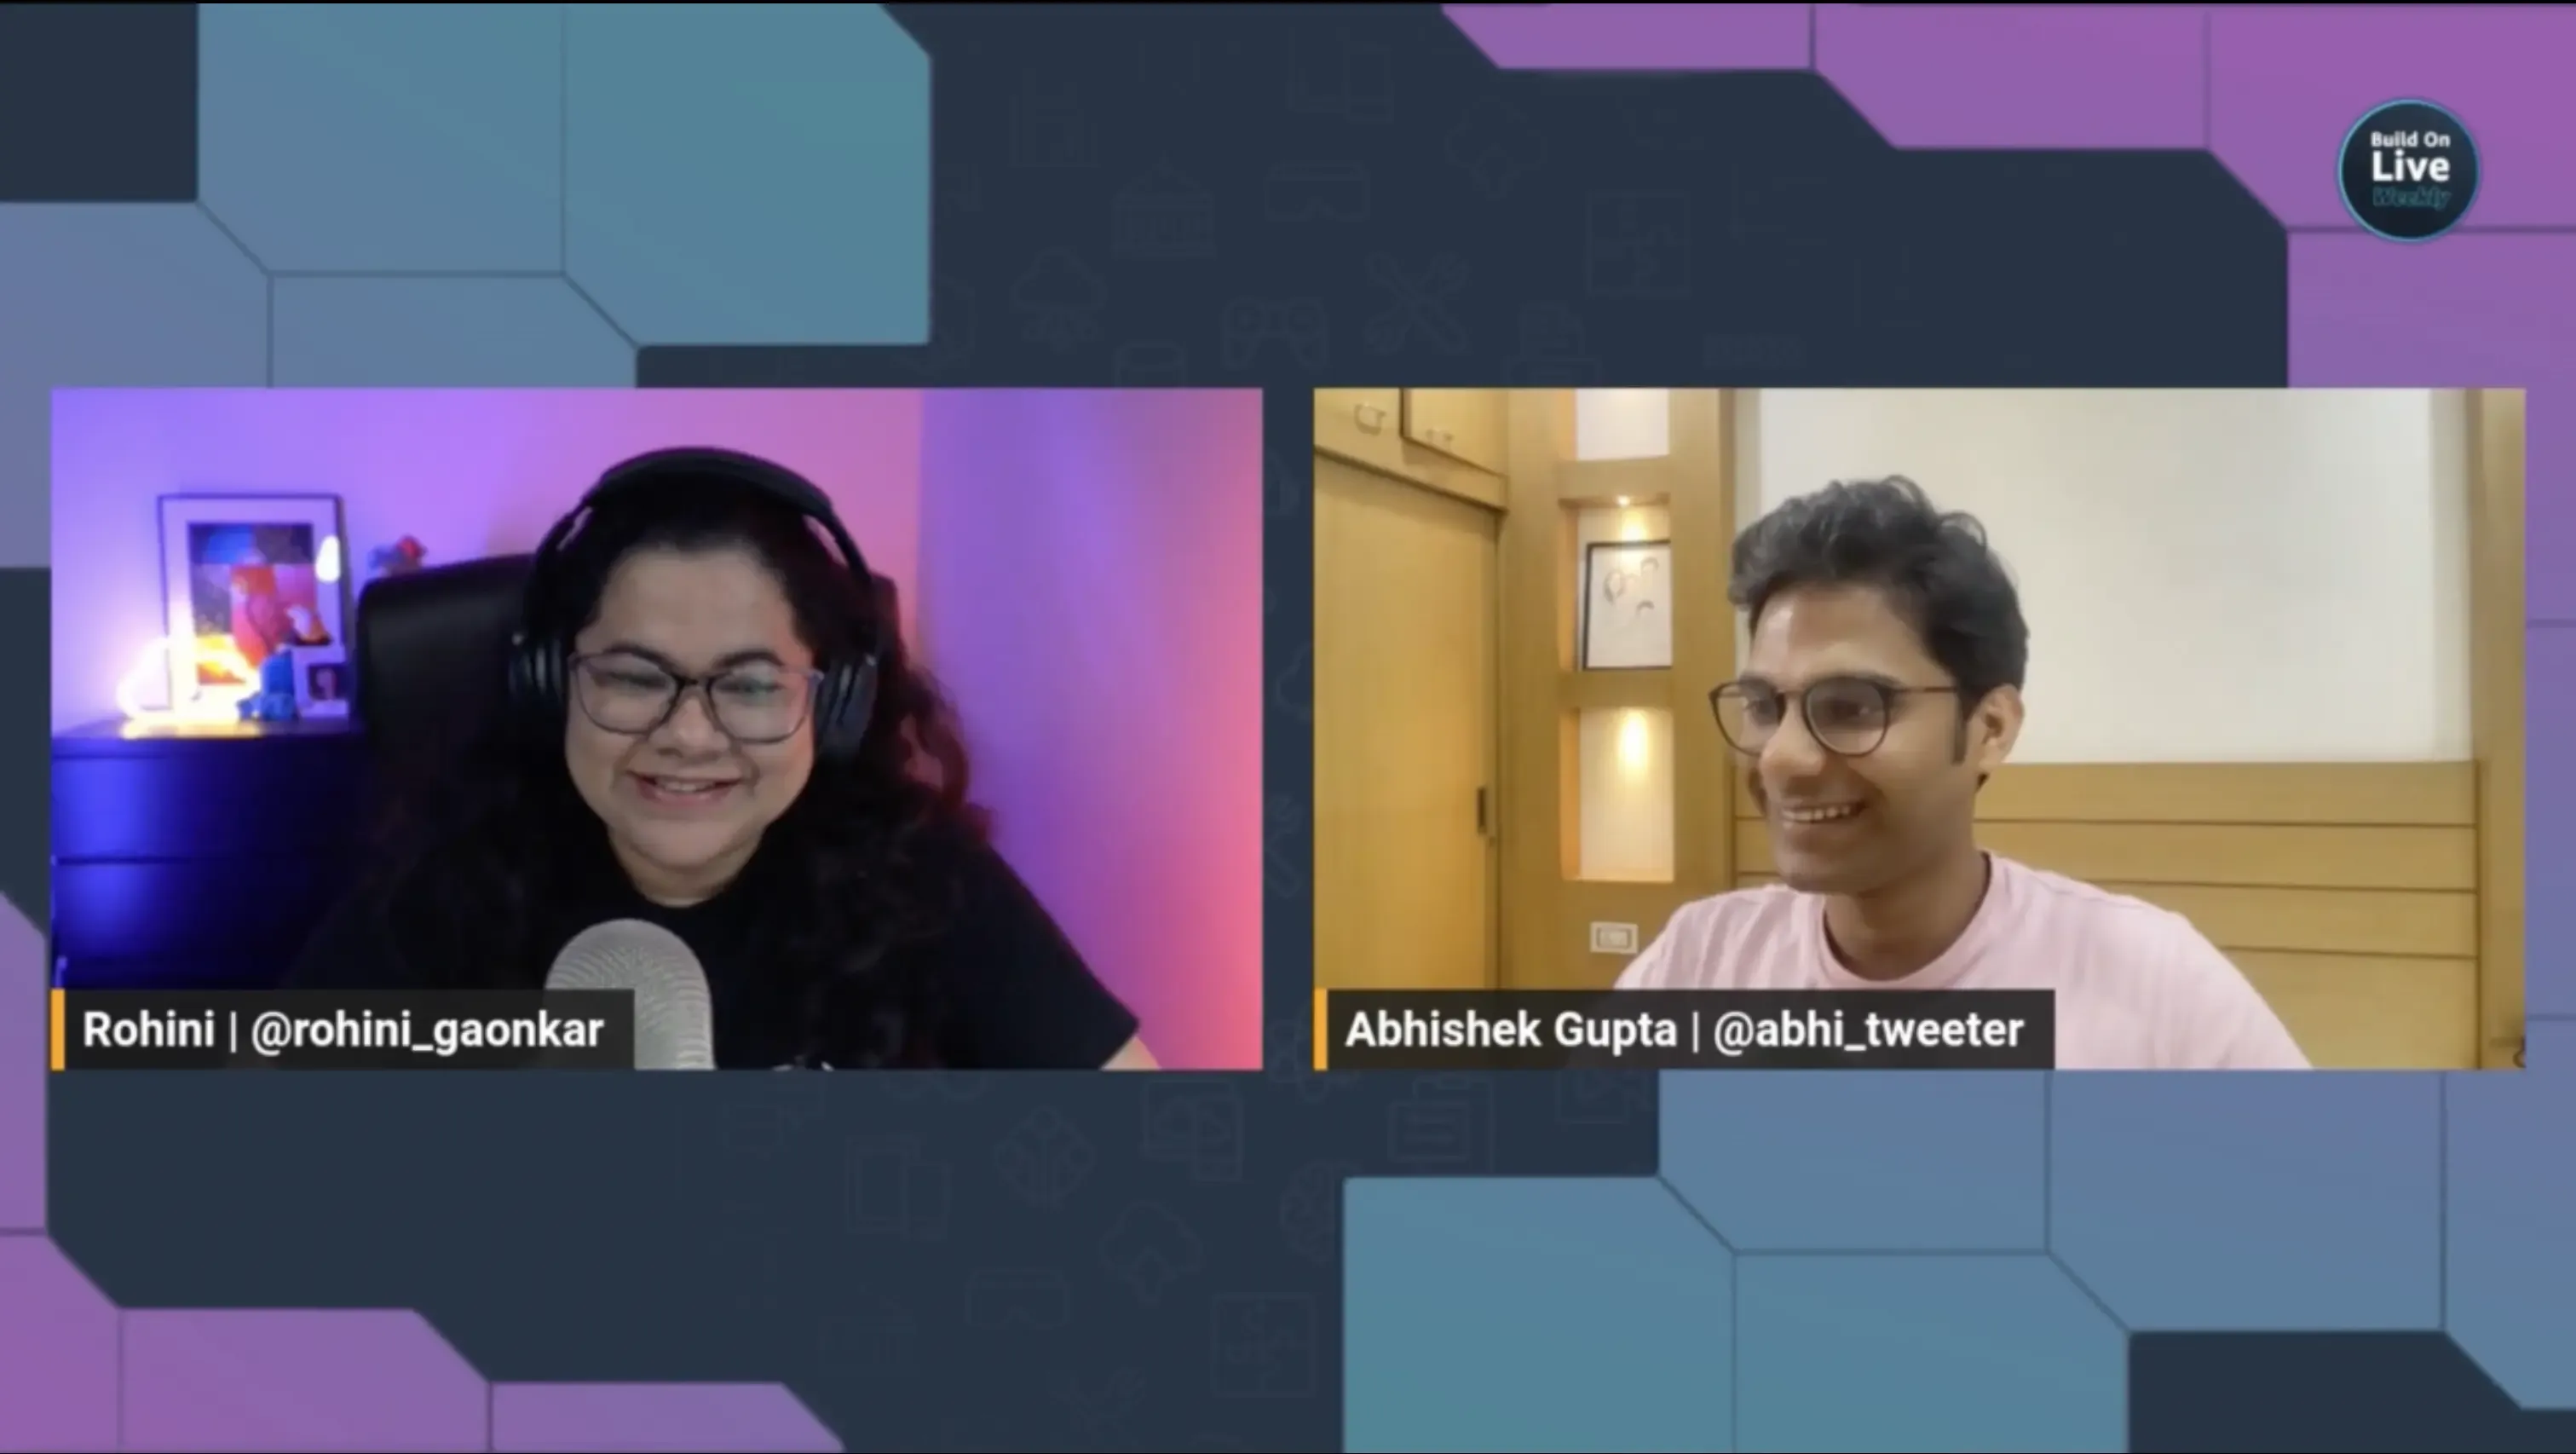 Abhishek and Rohini on the livestream